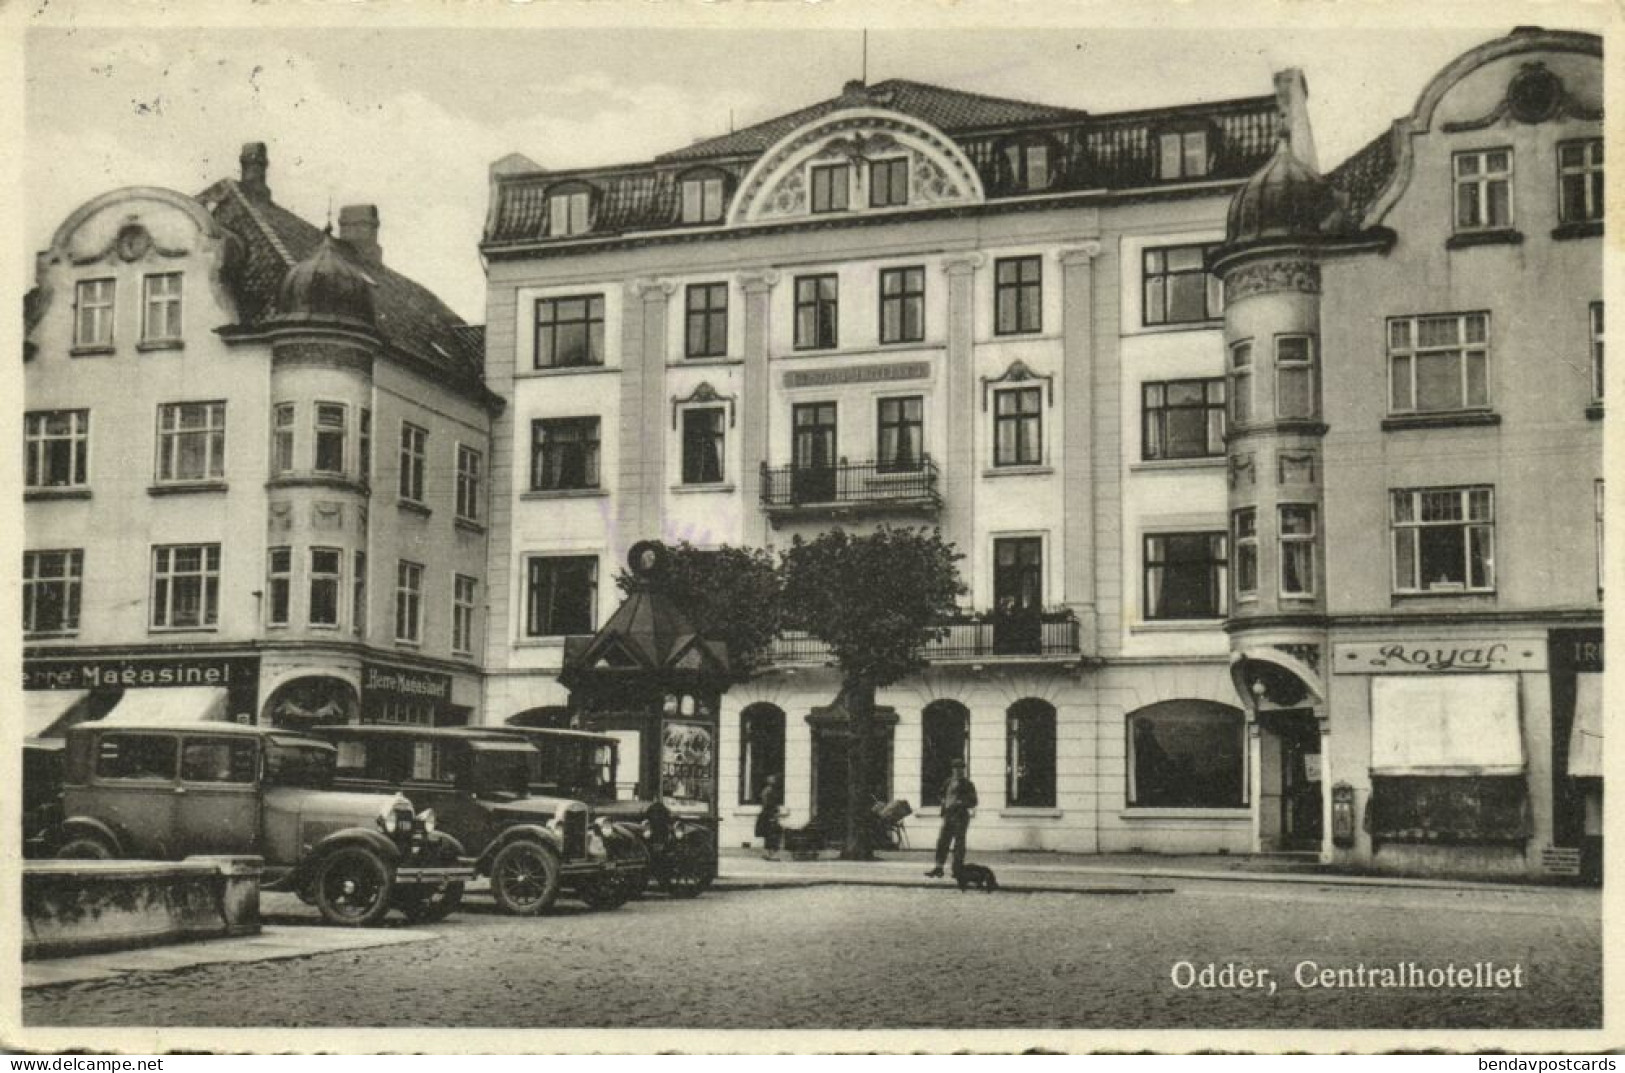 Denmark, ODDER, Centralhotellet, Hotel, Car (1940s) Postcard - Danemark